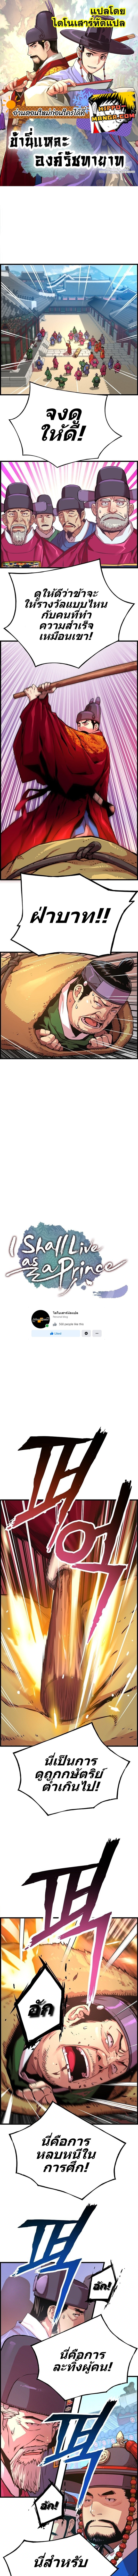 I Shall Live As a Prince 45 1